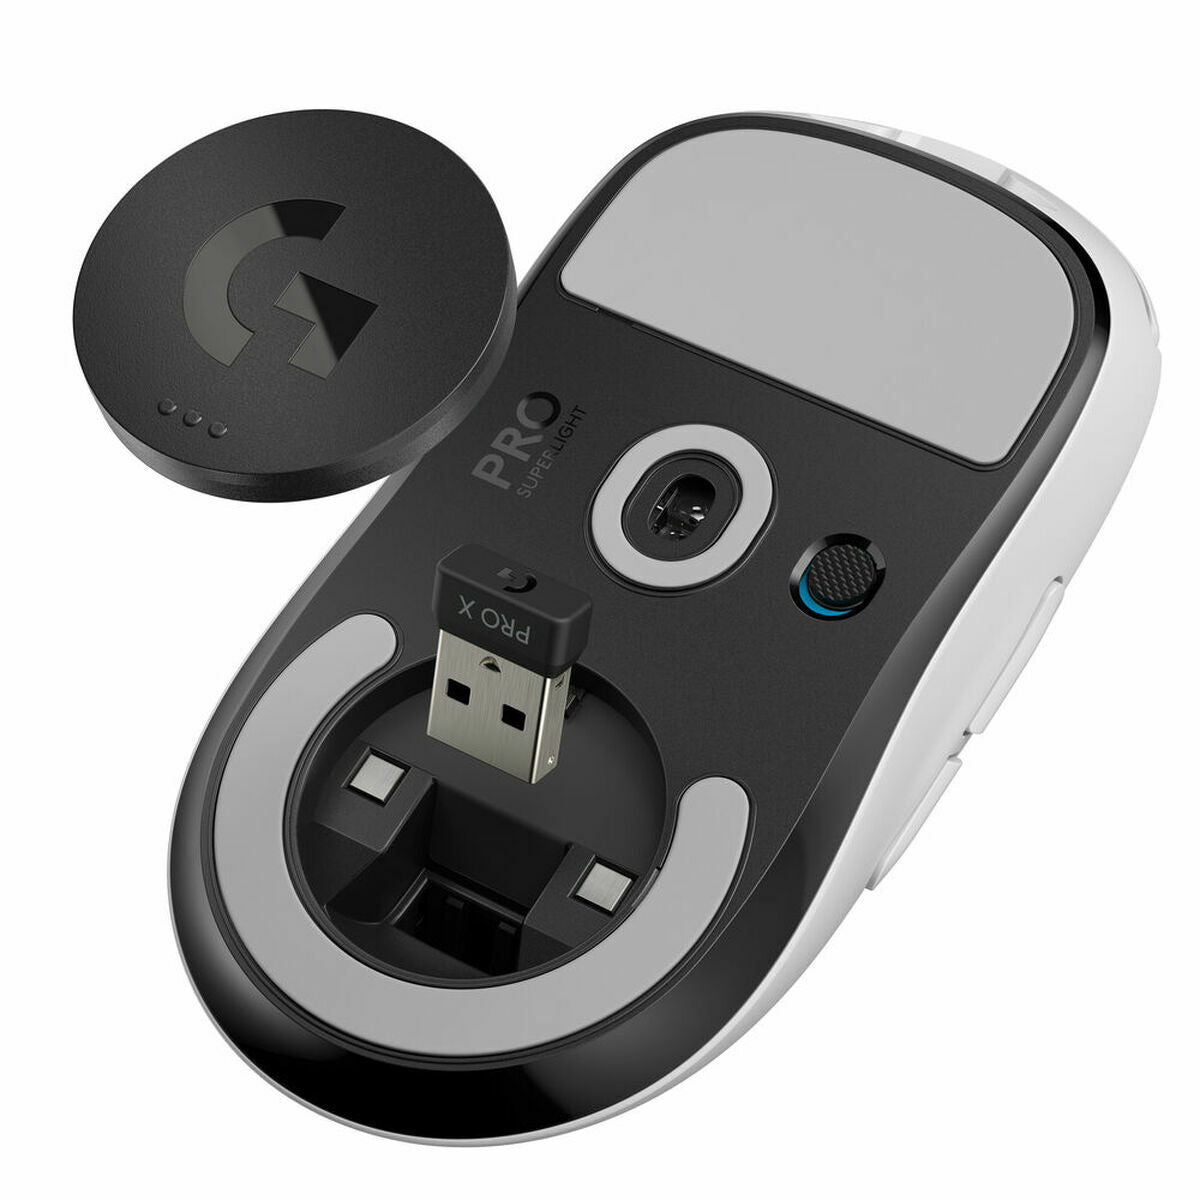 Mouse Logitech Pro x